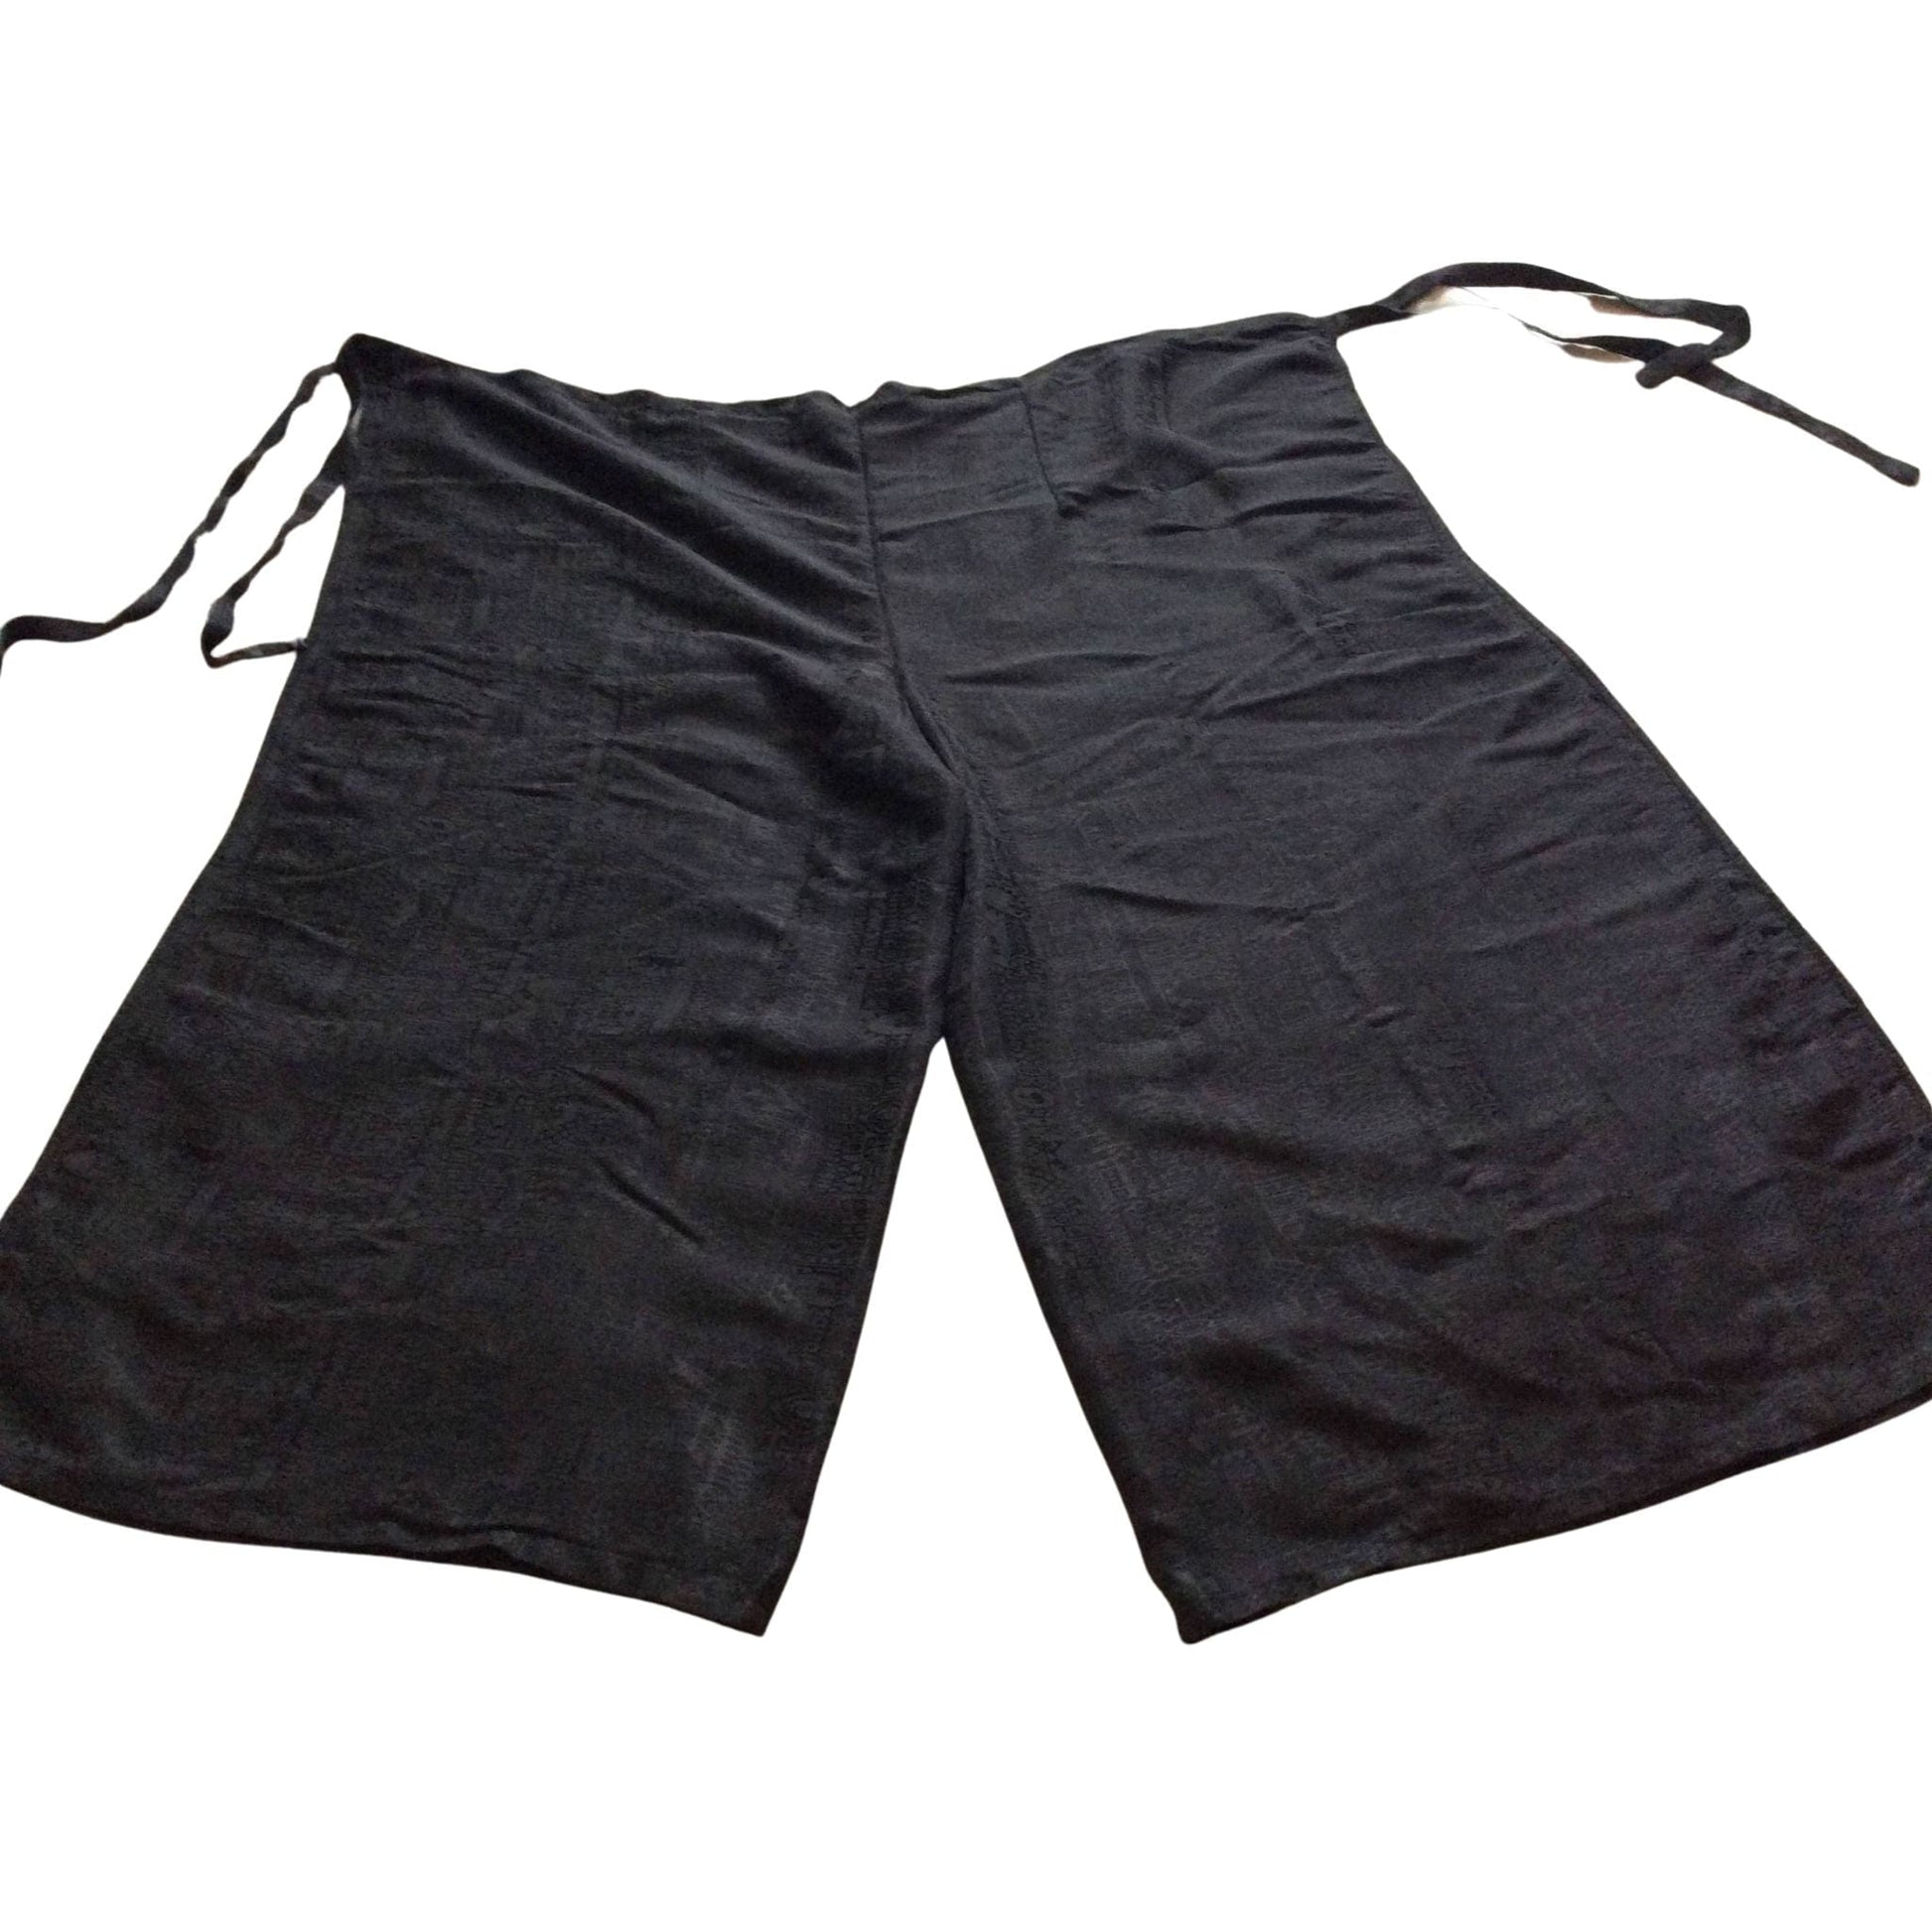 Silk Thai Split Pants Medium / Black / Vintage 1980s